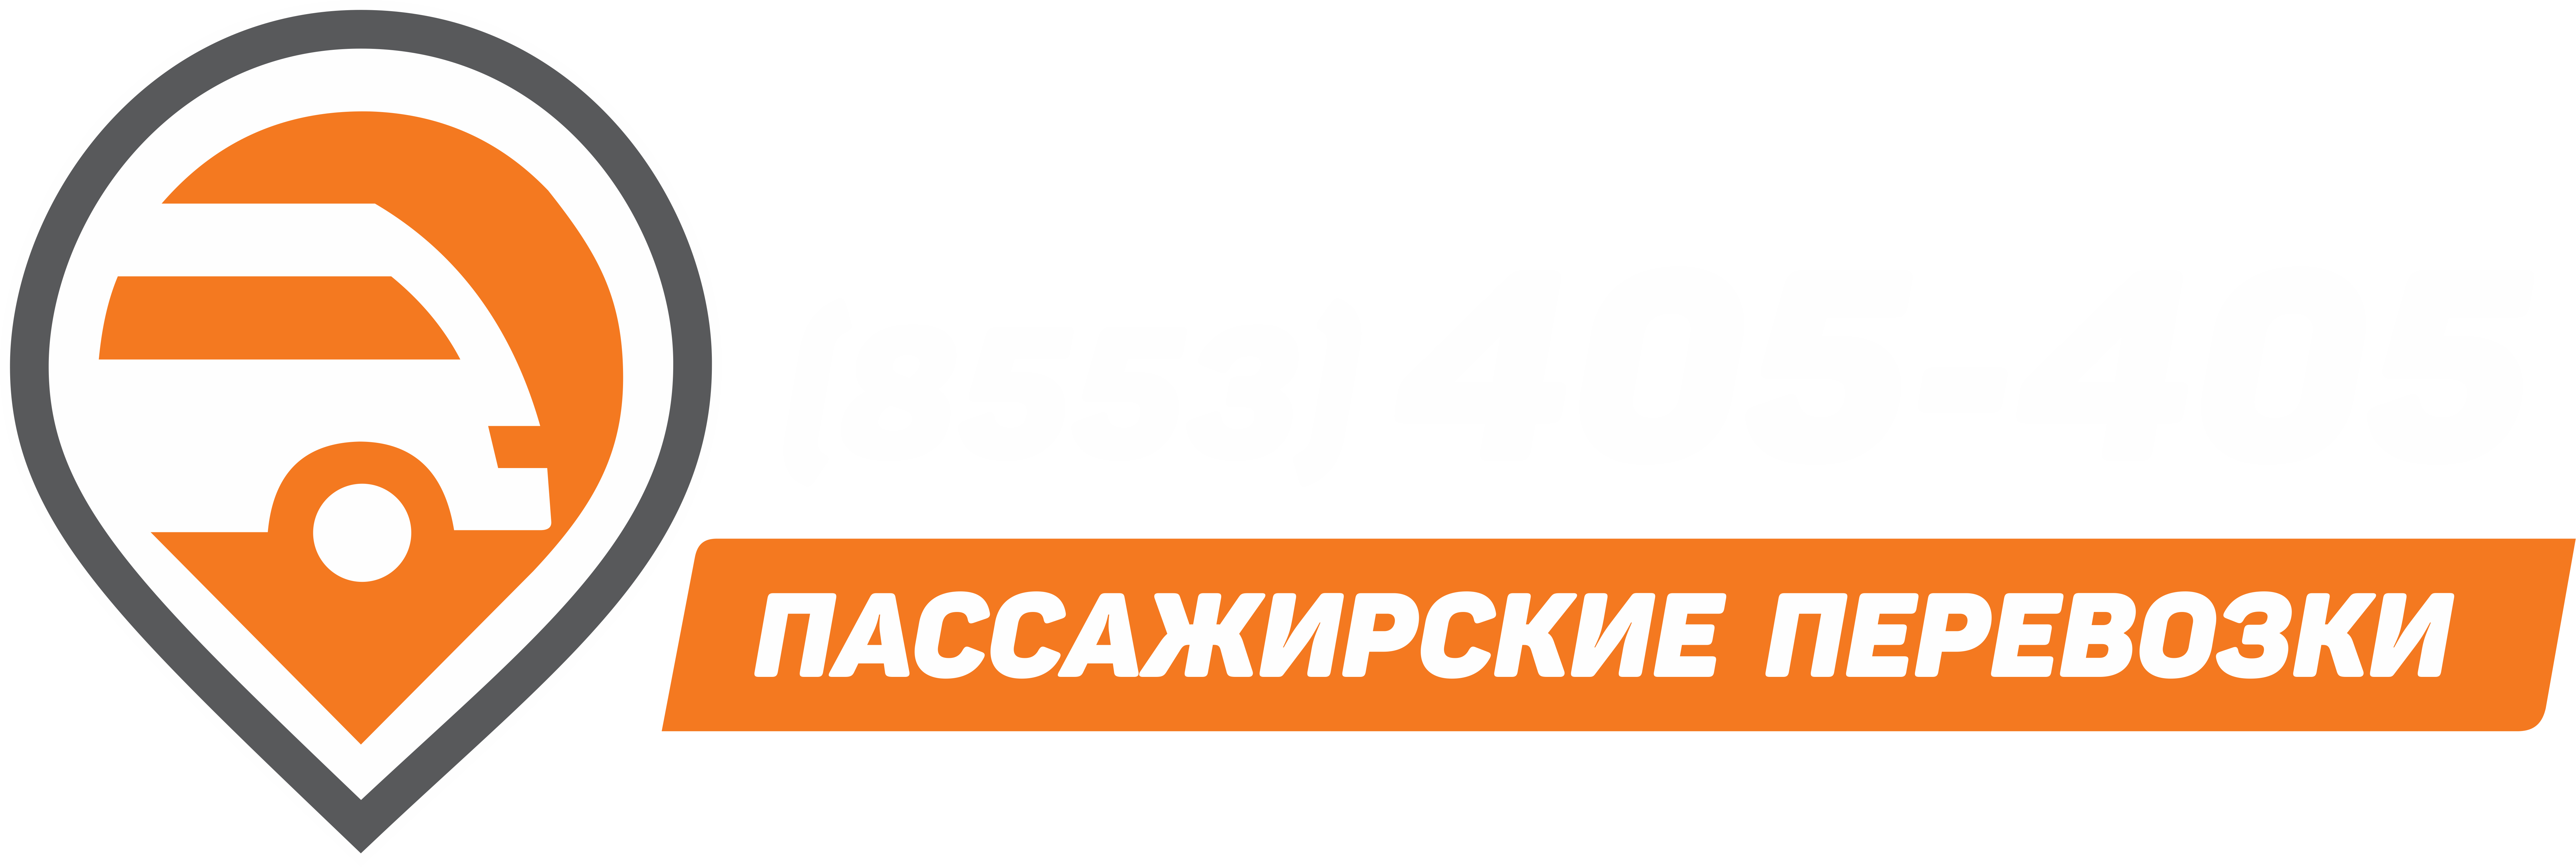 Пассажирские перевозки Альметьевск-Казань (8553) 405-405